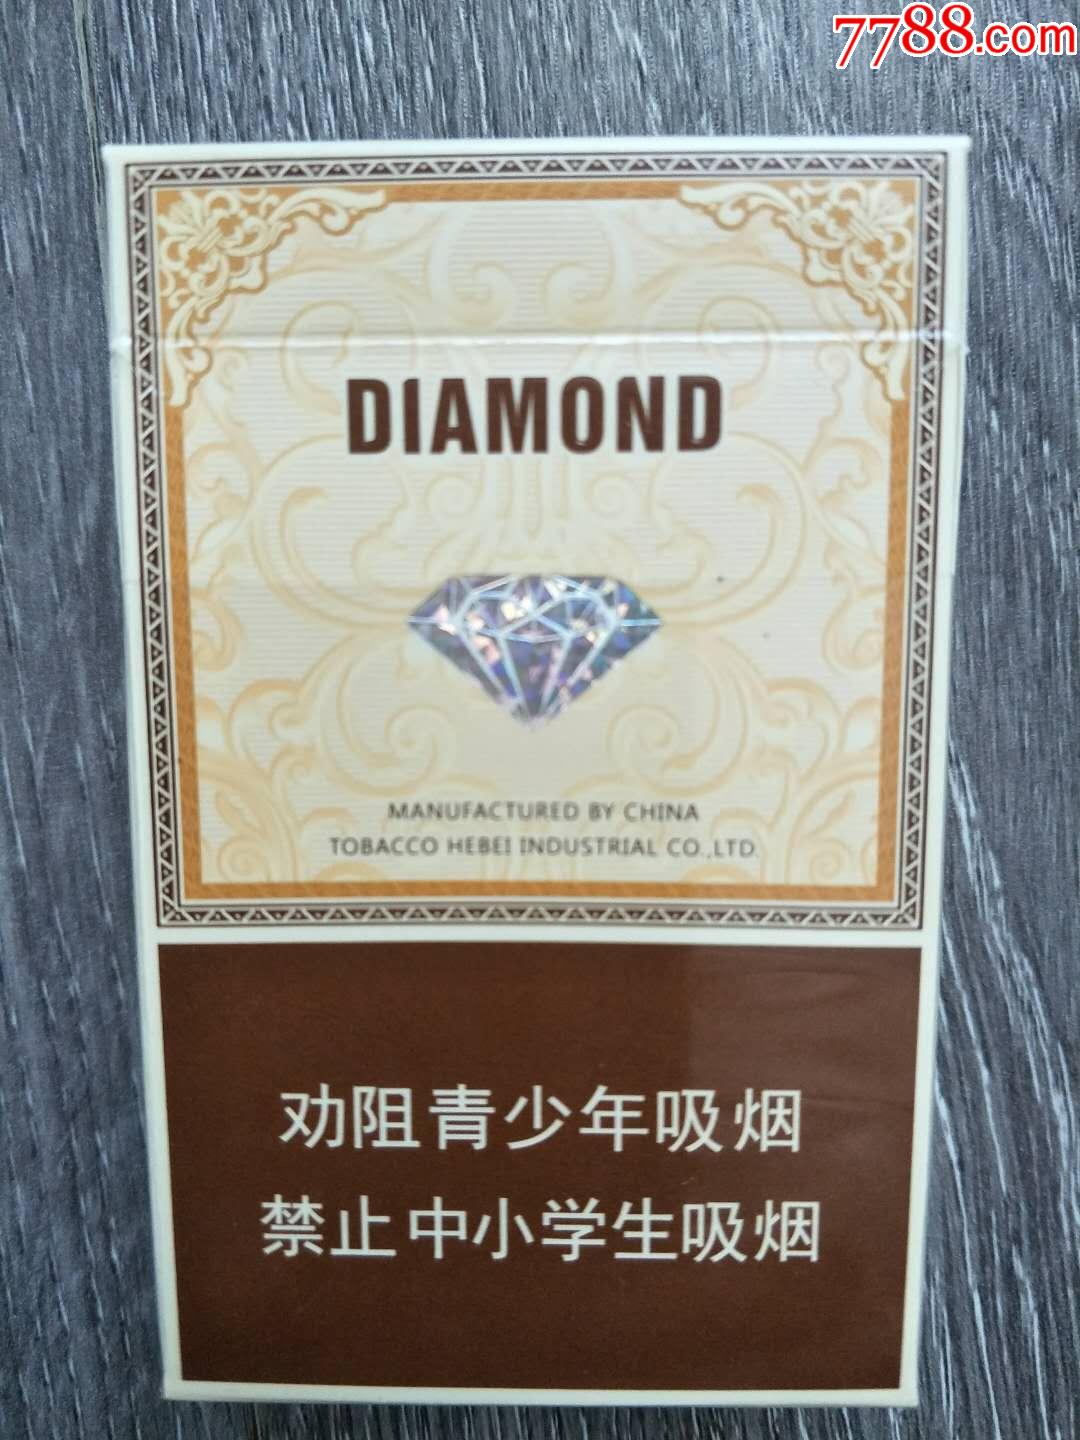 钻石烟100元一盒的图片